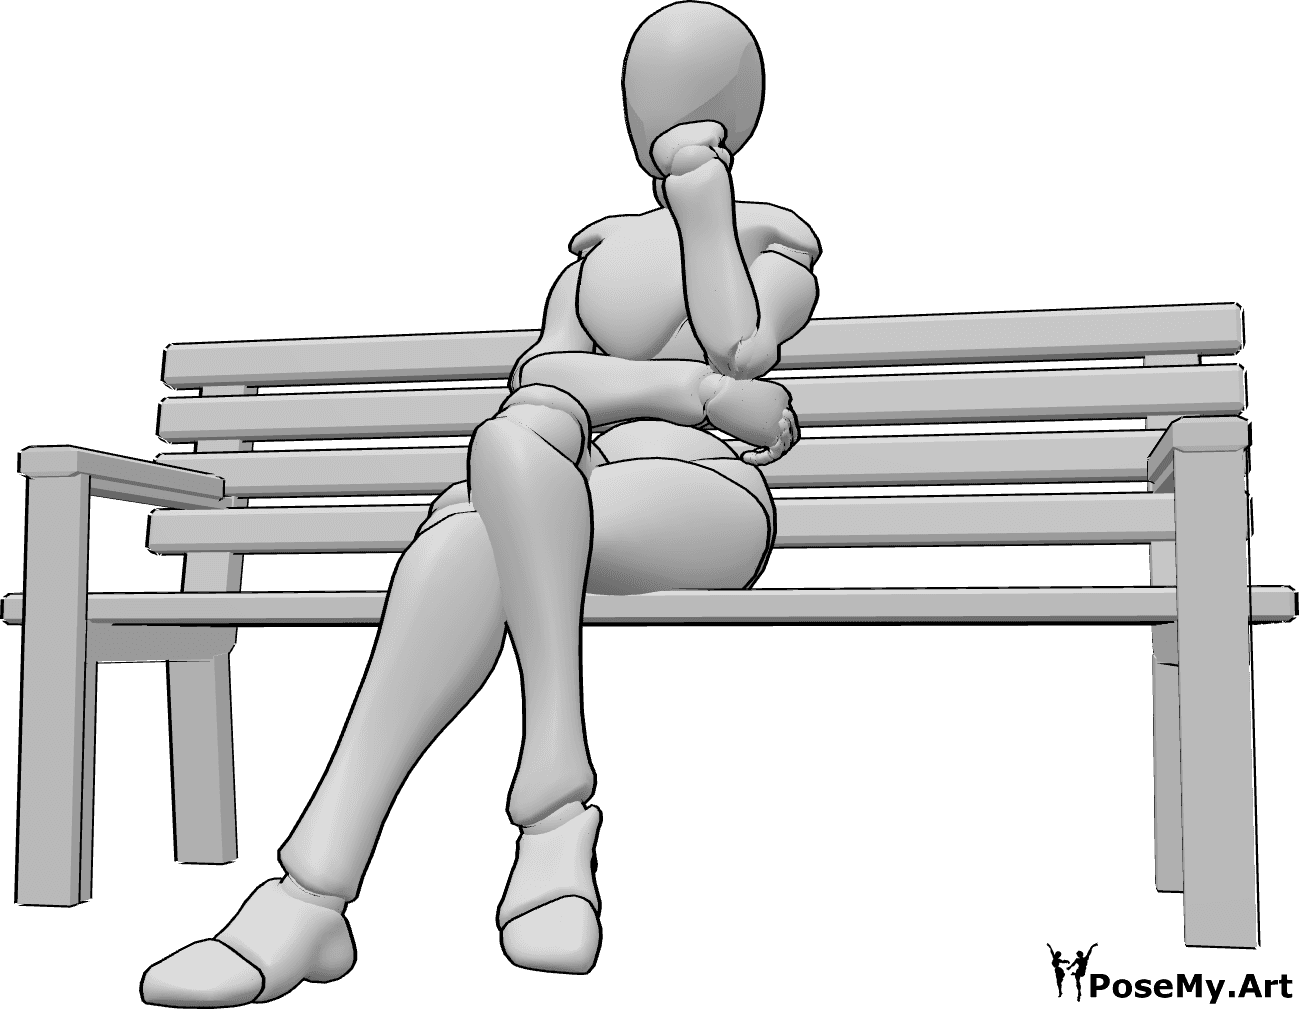 Référence des poses- Posture du banc assis - La femme est assise sur le banc, les jambes croisées.